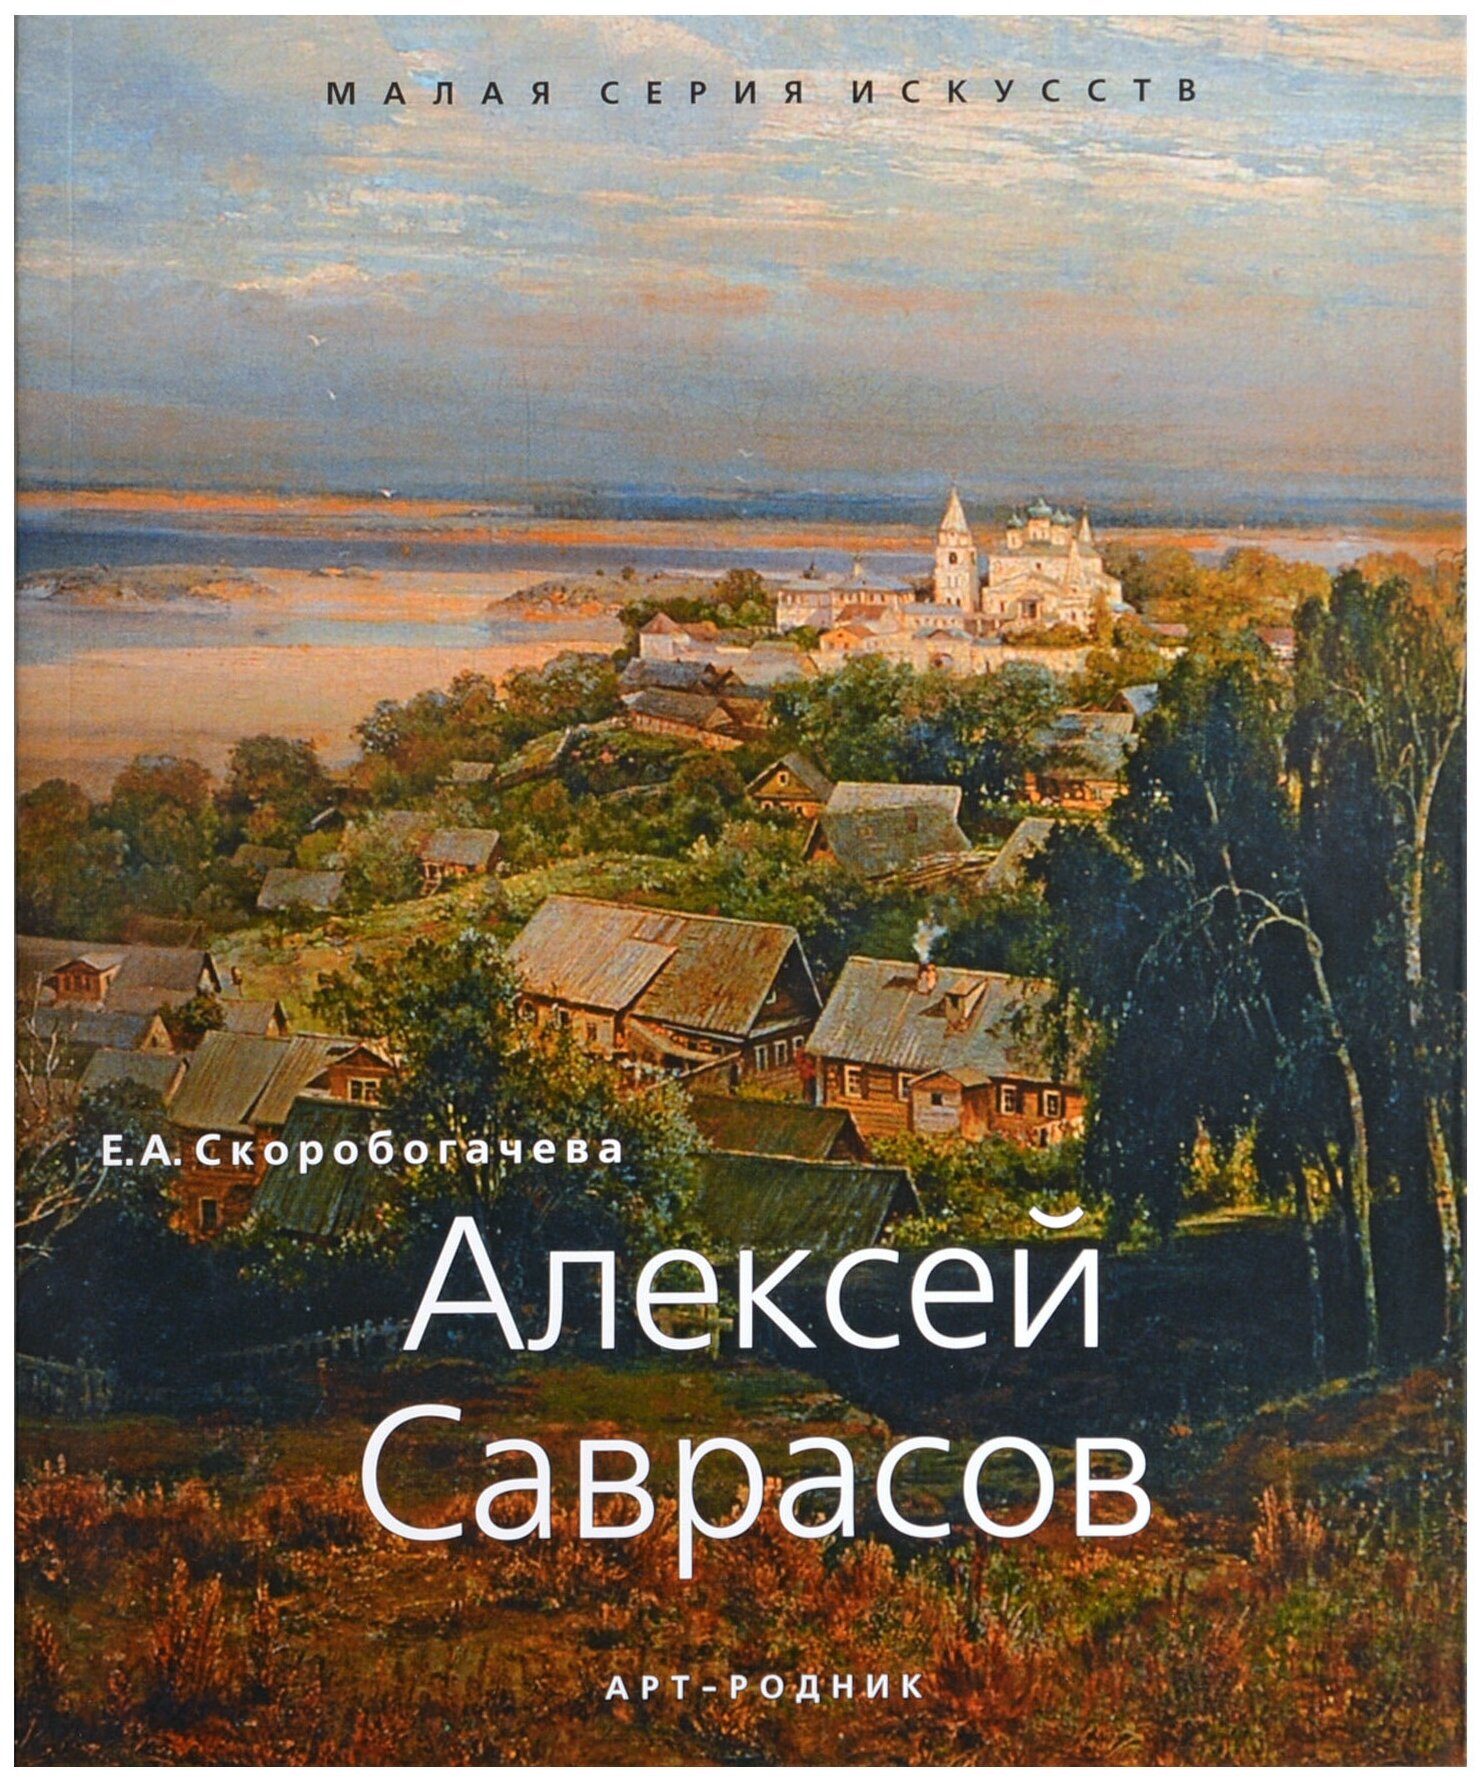 Алексей Саврасов 1830-1897 (Скоробогачева Екатерина) - фото №1